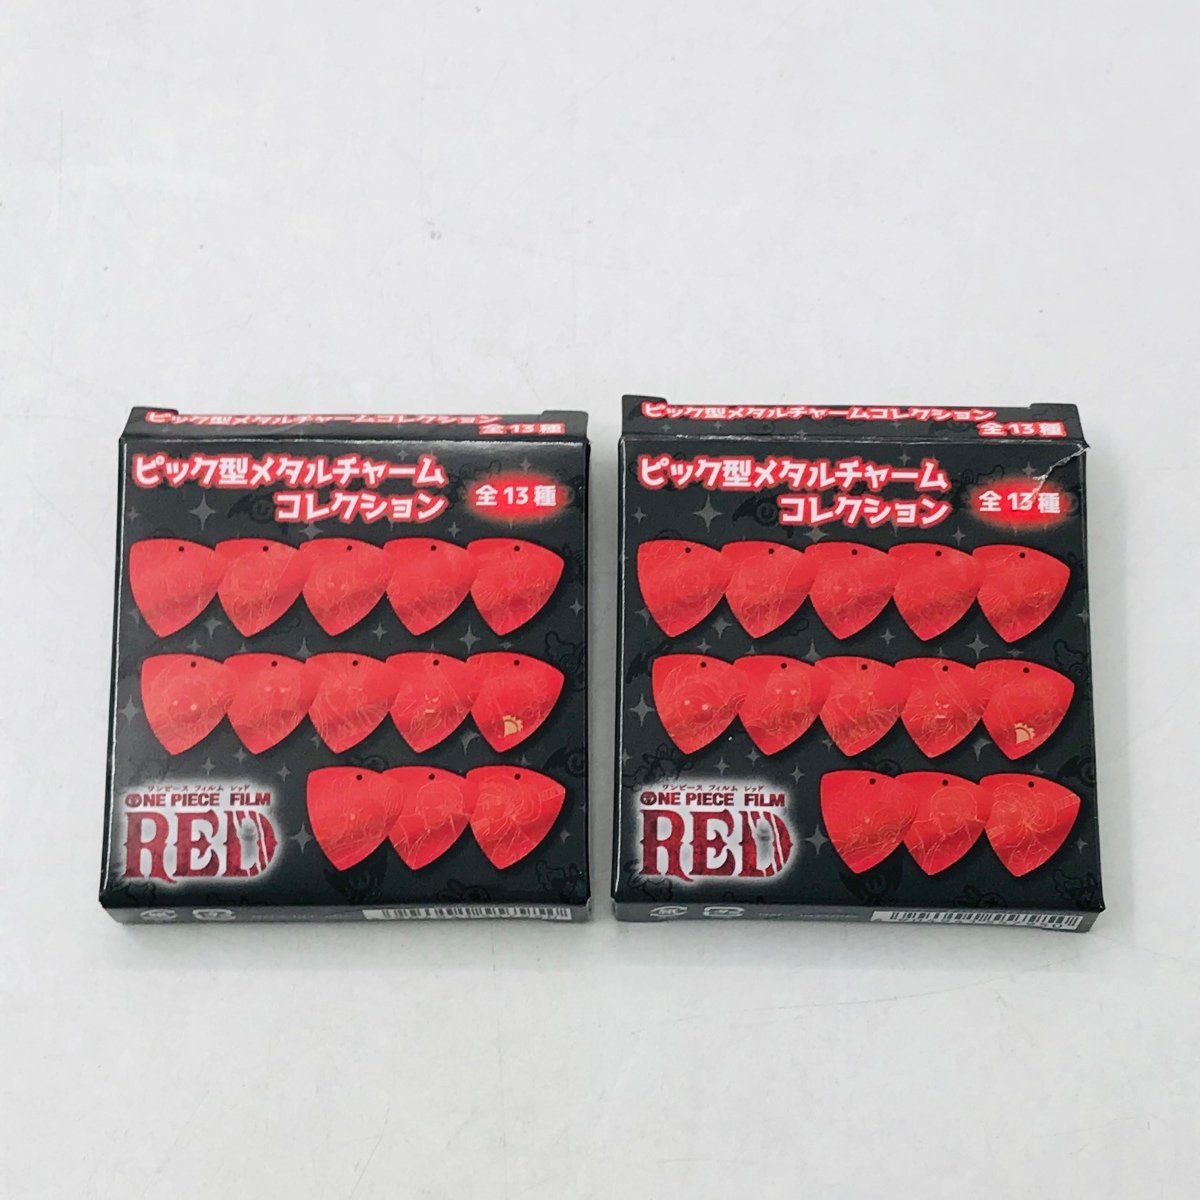 新古品 ピック型メタルチャーム コレクション ワンピース FILM RED